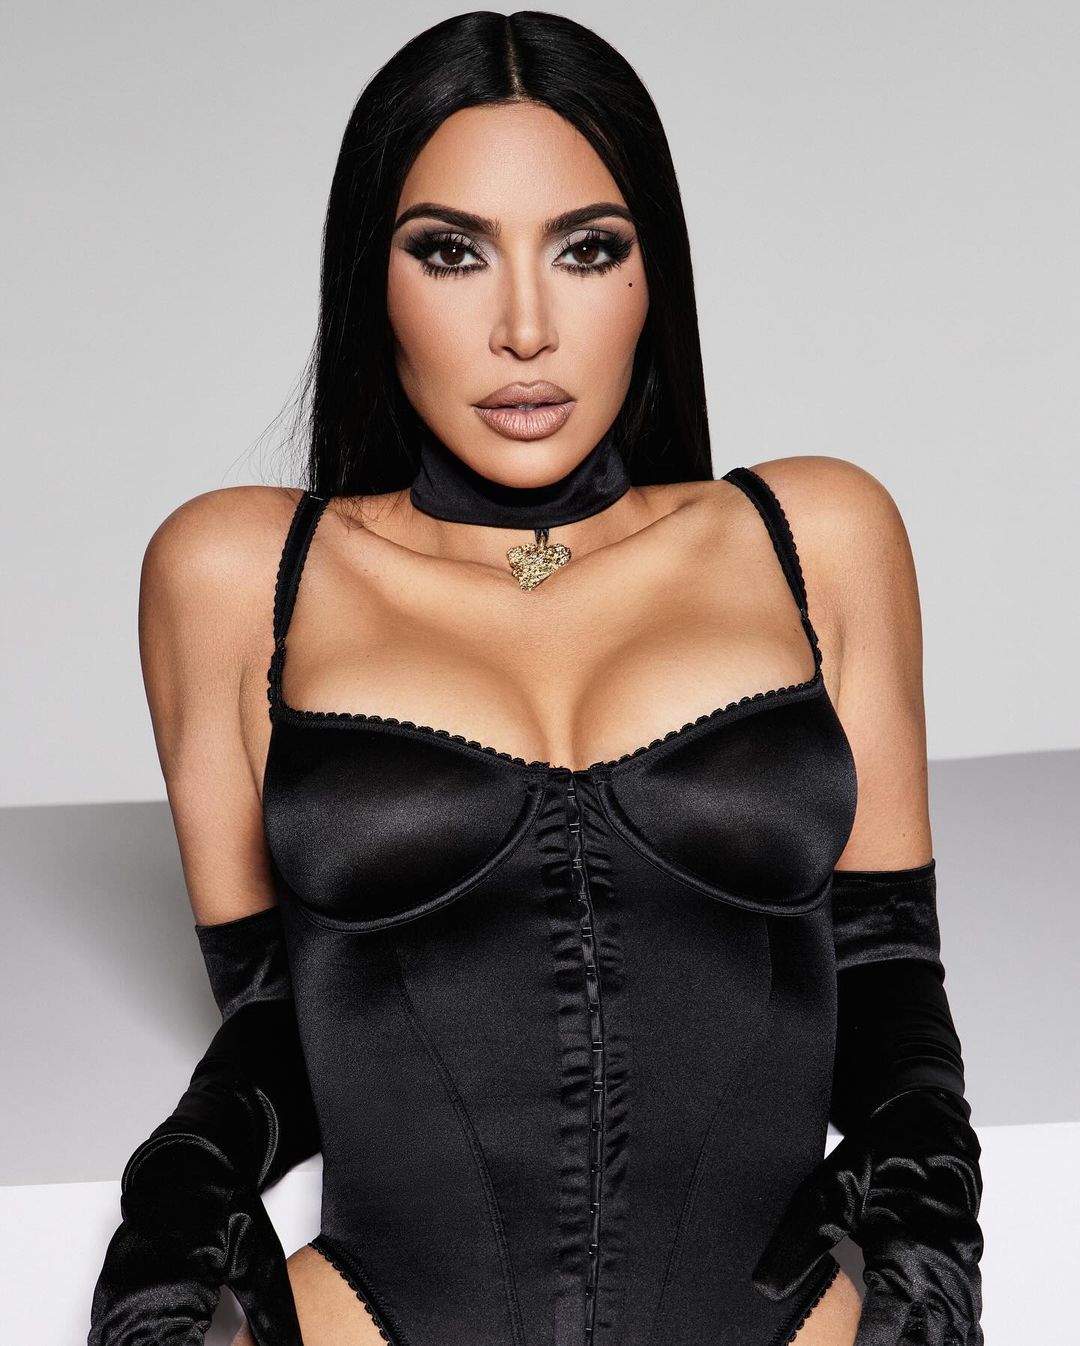  Η νέα συλλογή της Kim Kardashian για τη Skims έχει μια πιο naughty διάθεση